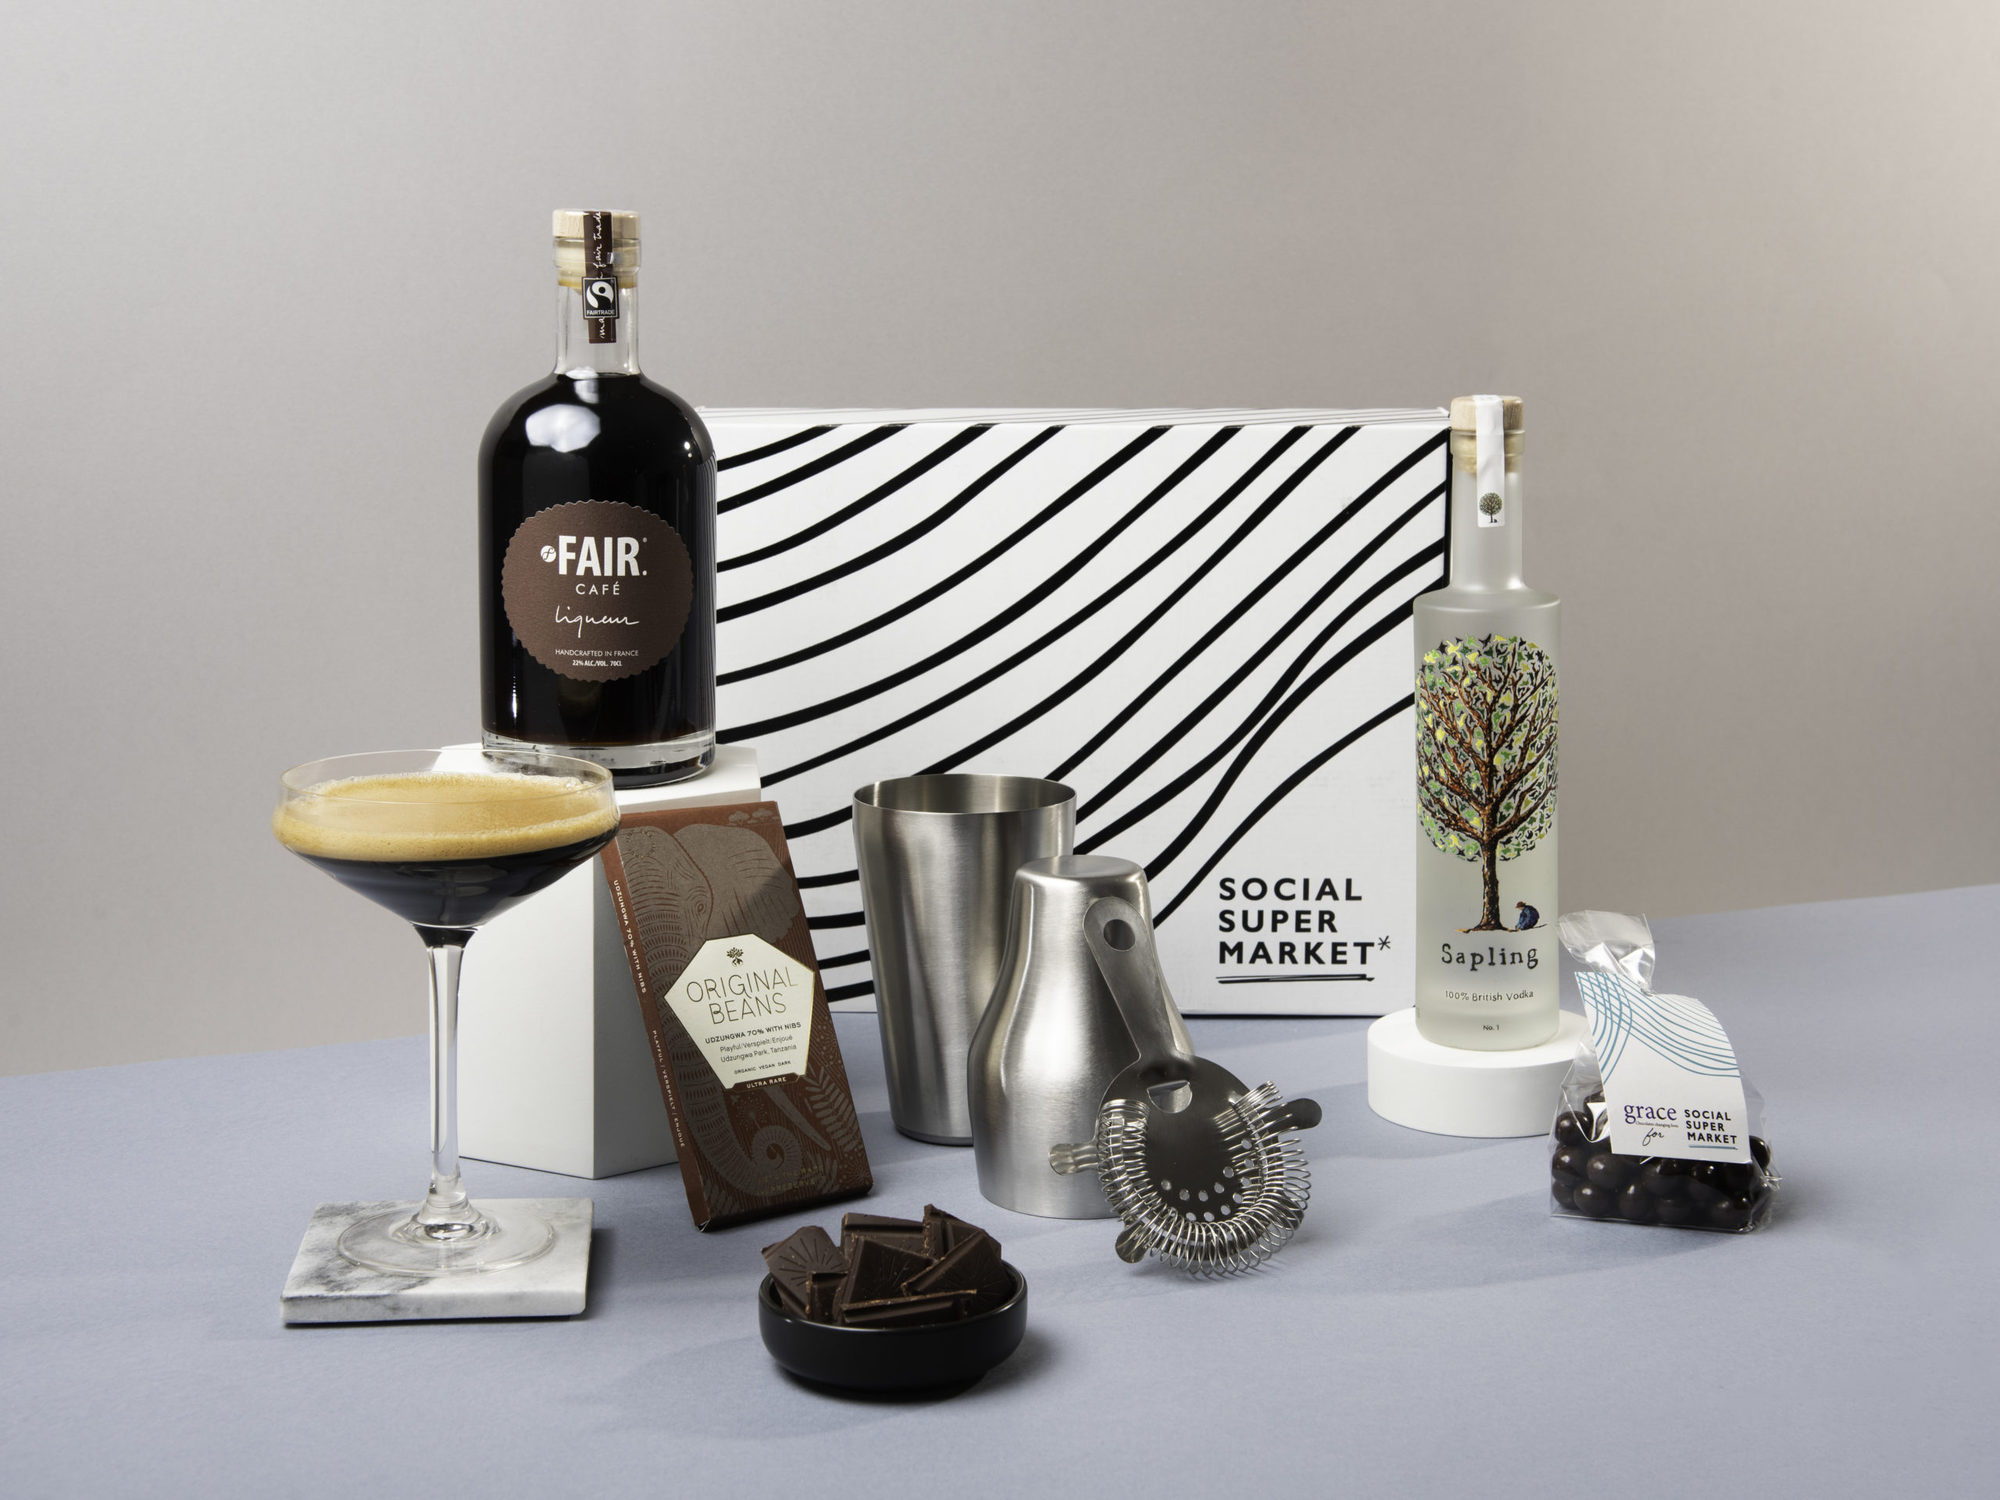 The New Year's Espresso Martini Gift Box (Pre-Order)